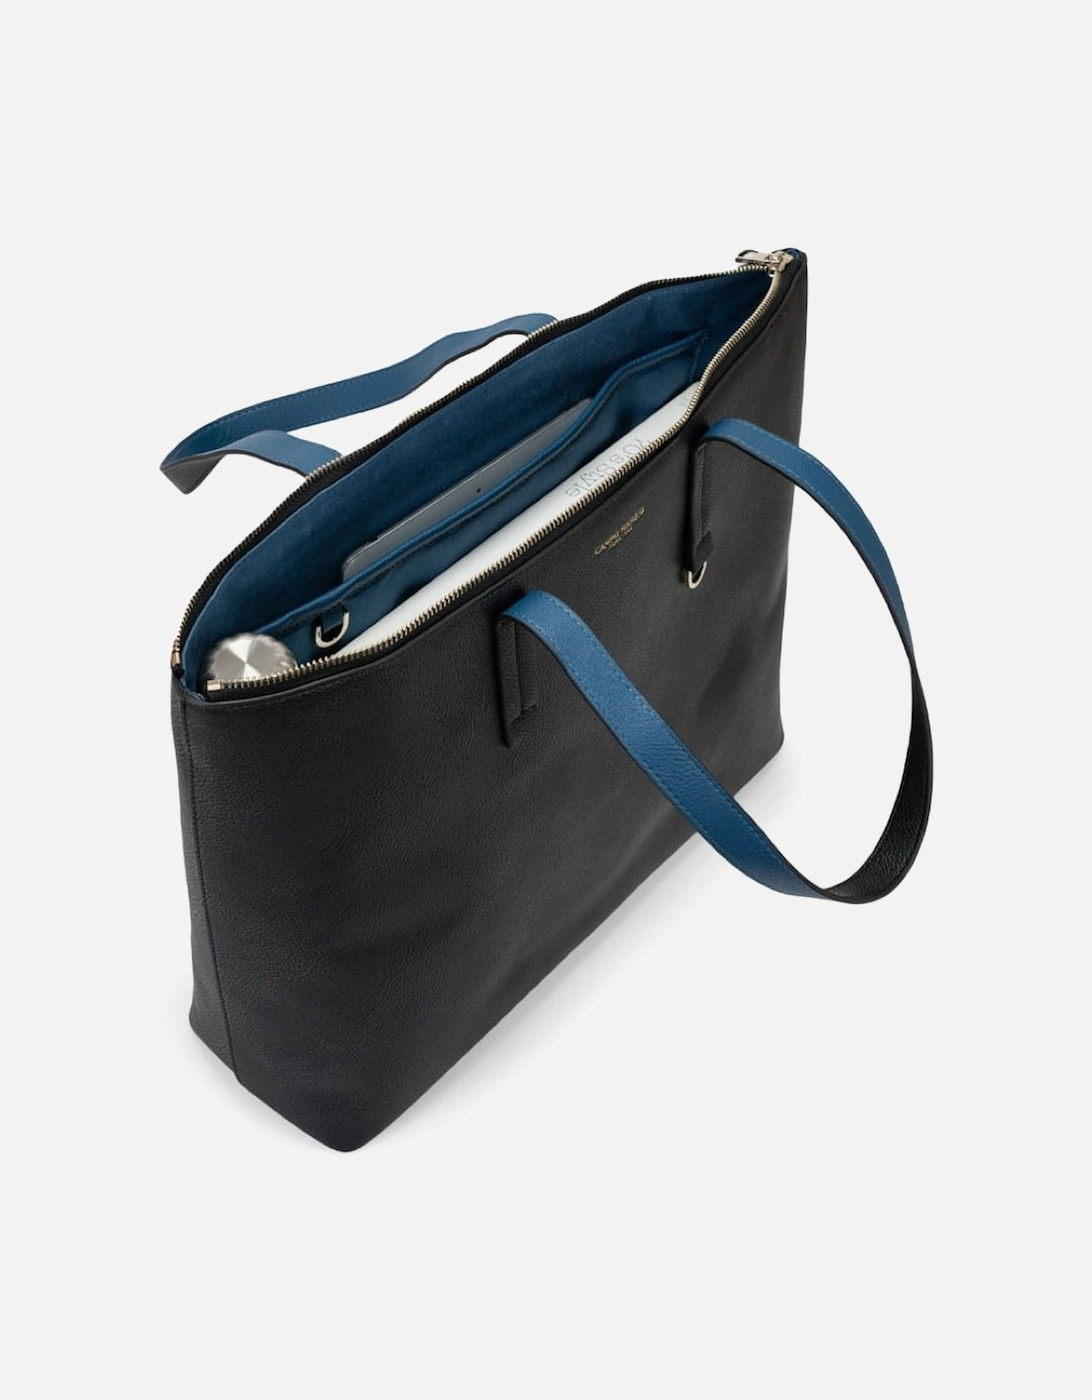 Winona Shopping Bag - Black Lapis Blue